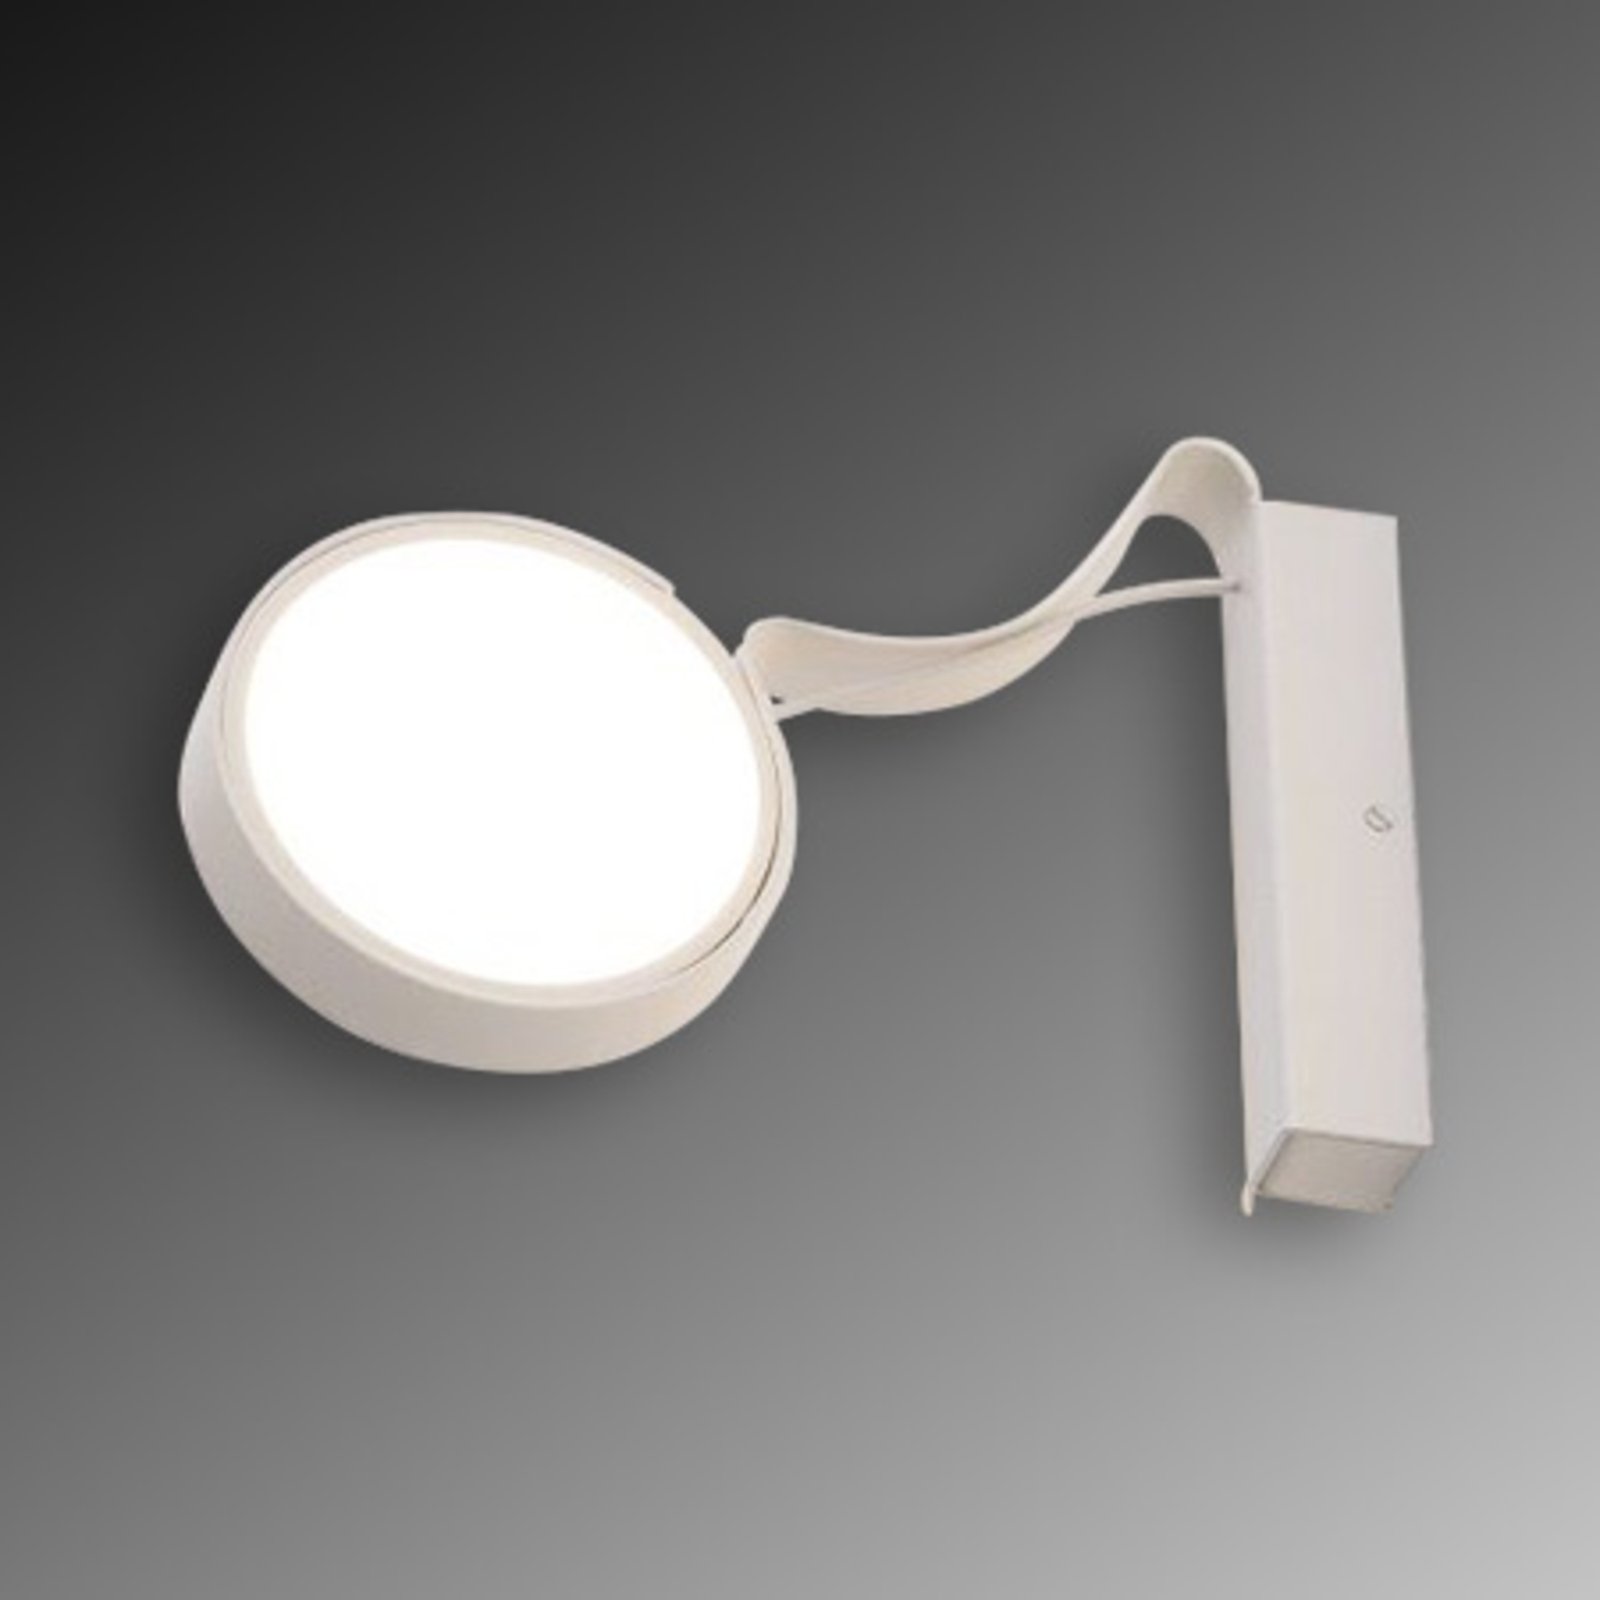 LED-vägglampa DND profil i vitt